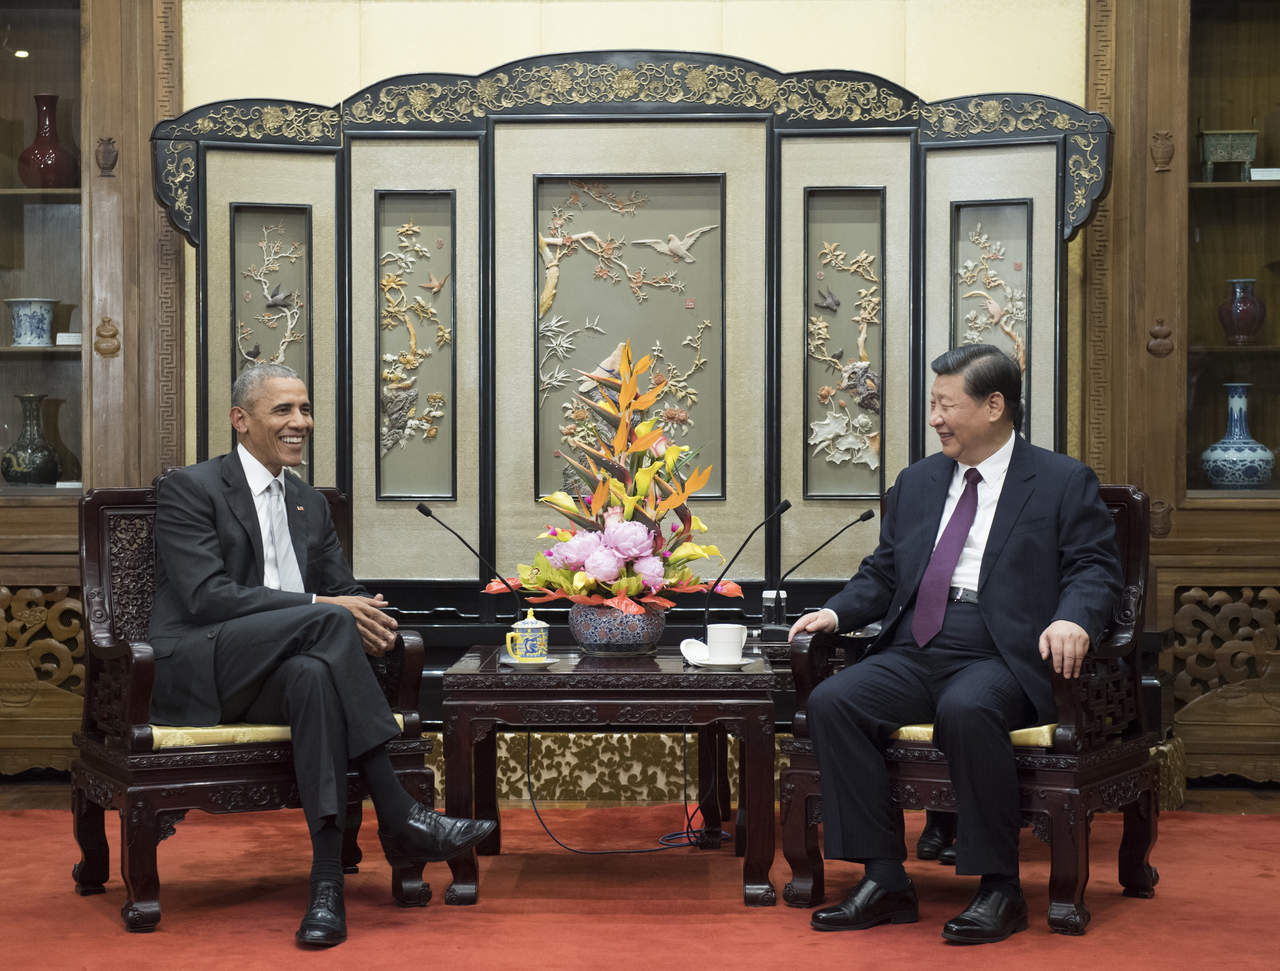 Presidente chino expresa a Obama deseo de fortalecer relaciones con EU